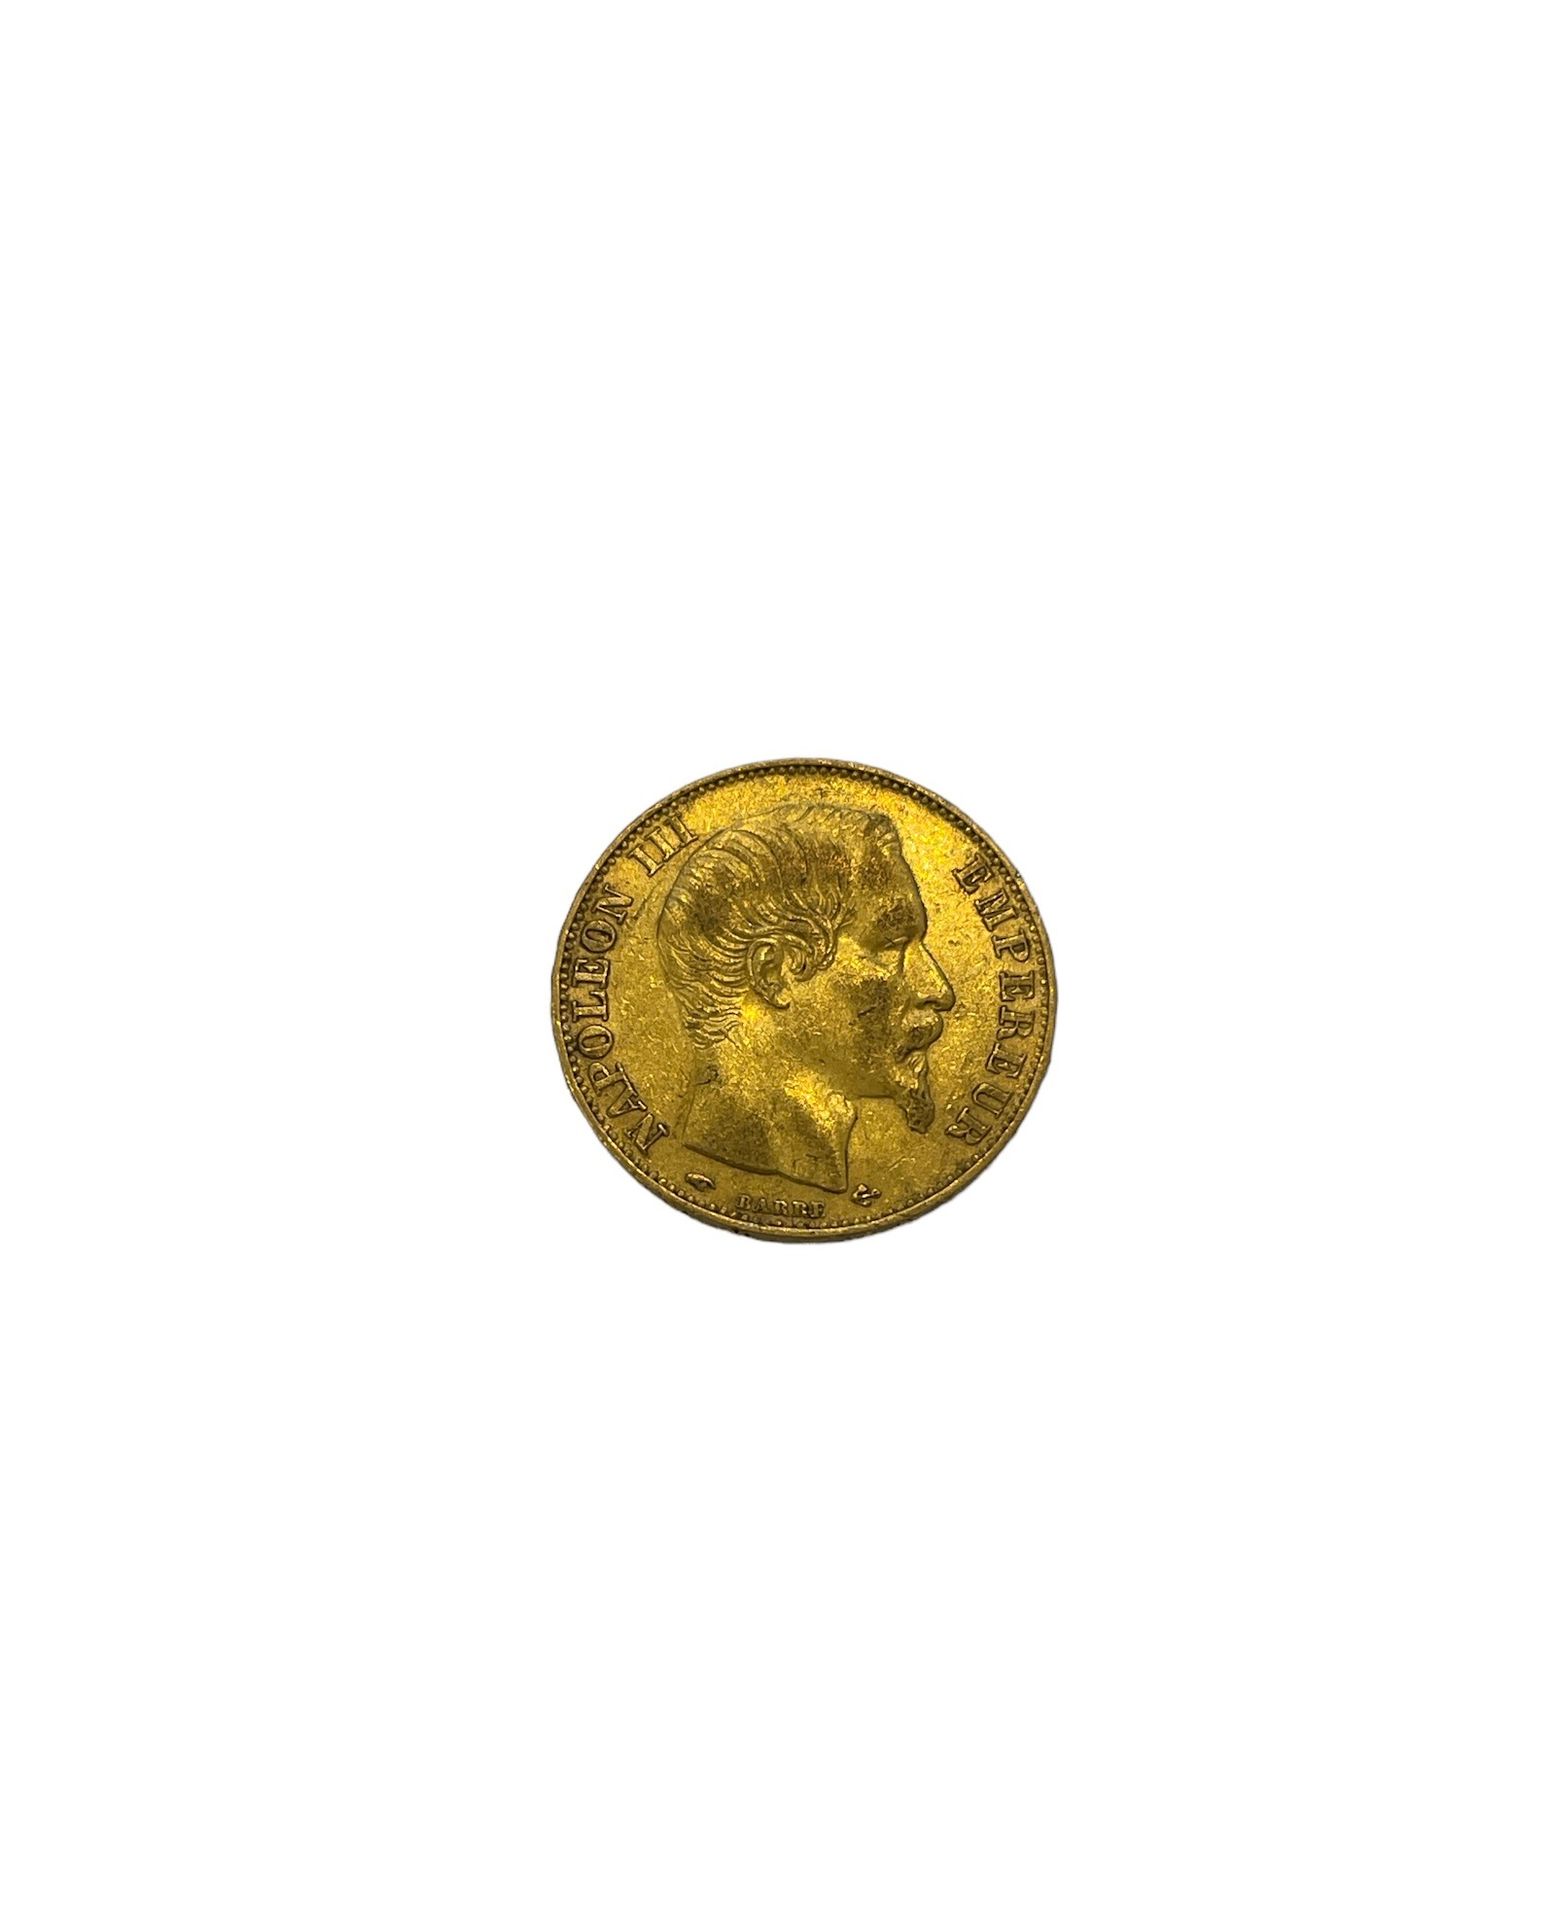 Null FRANCIA
1 moneda de 20 francos de oro Napoleón III
Peso : 7 g